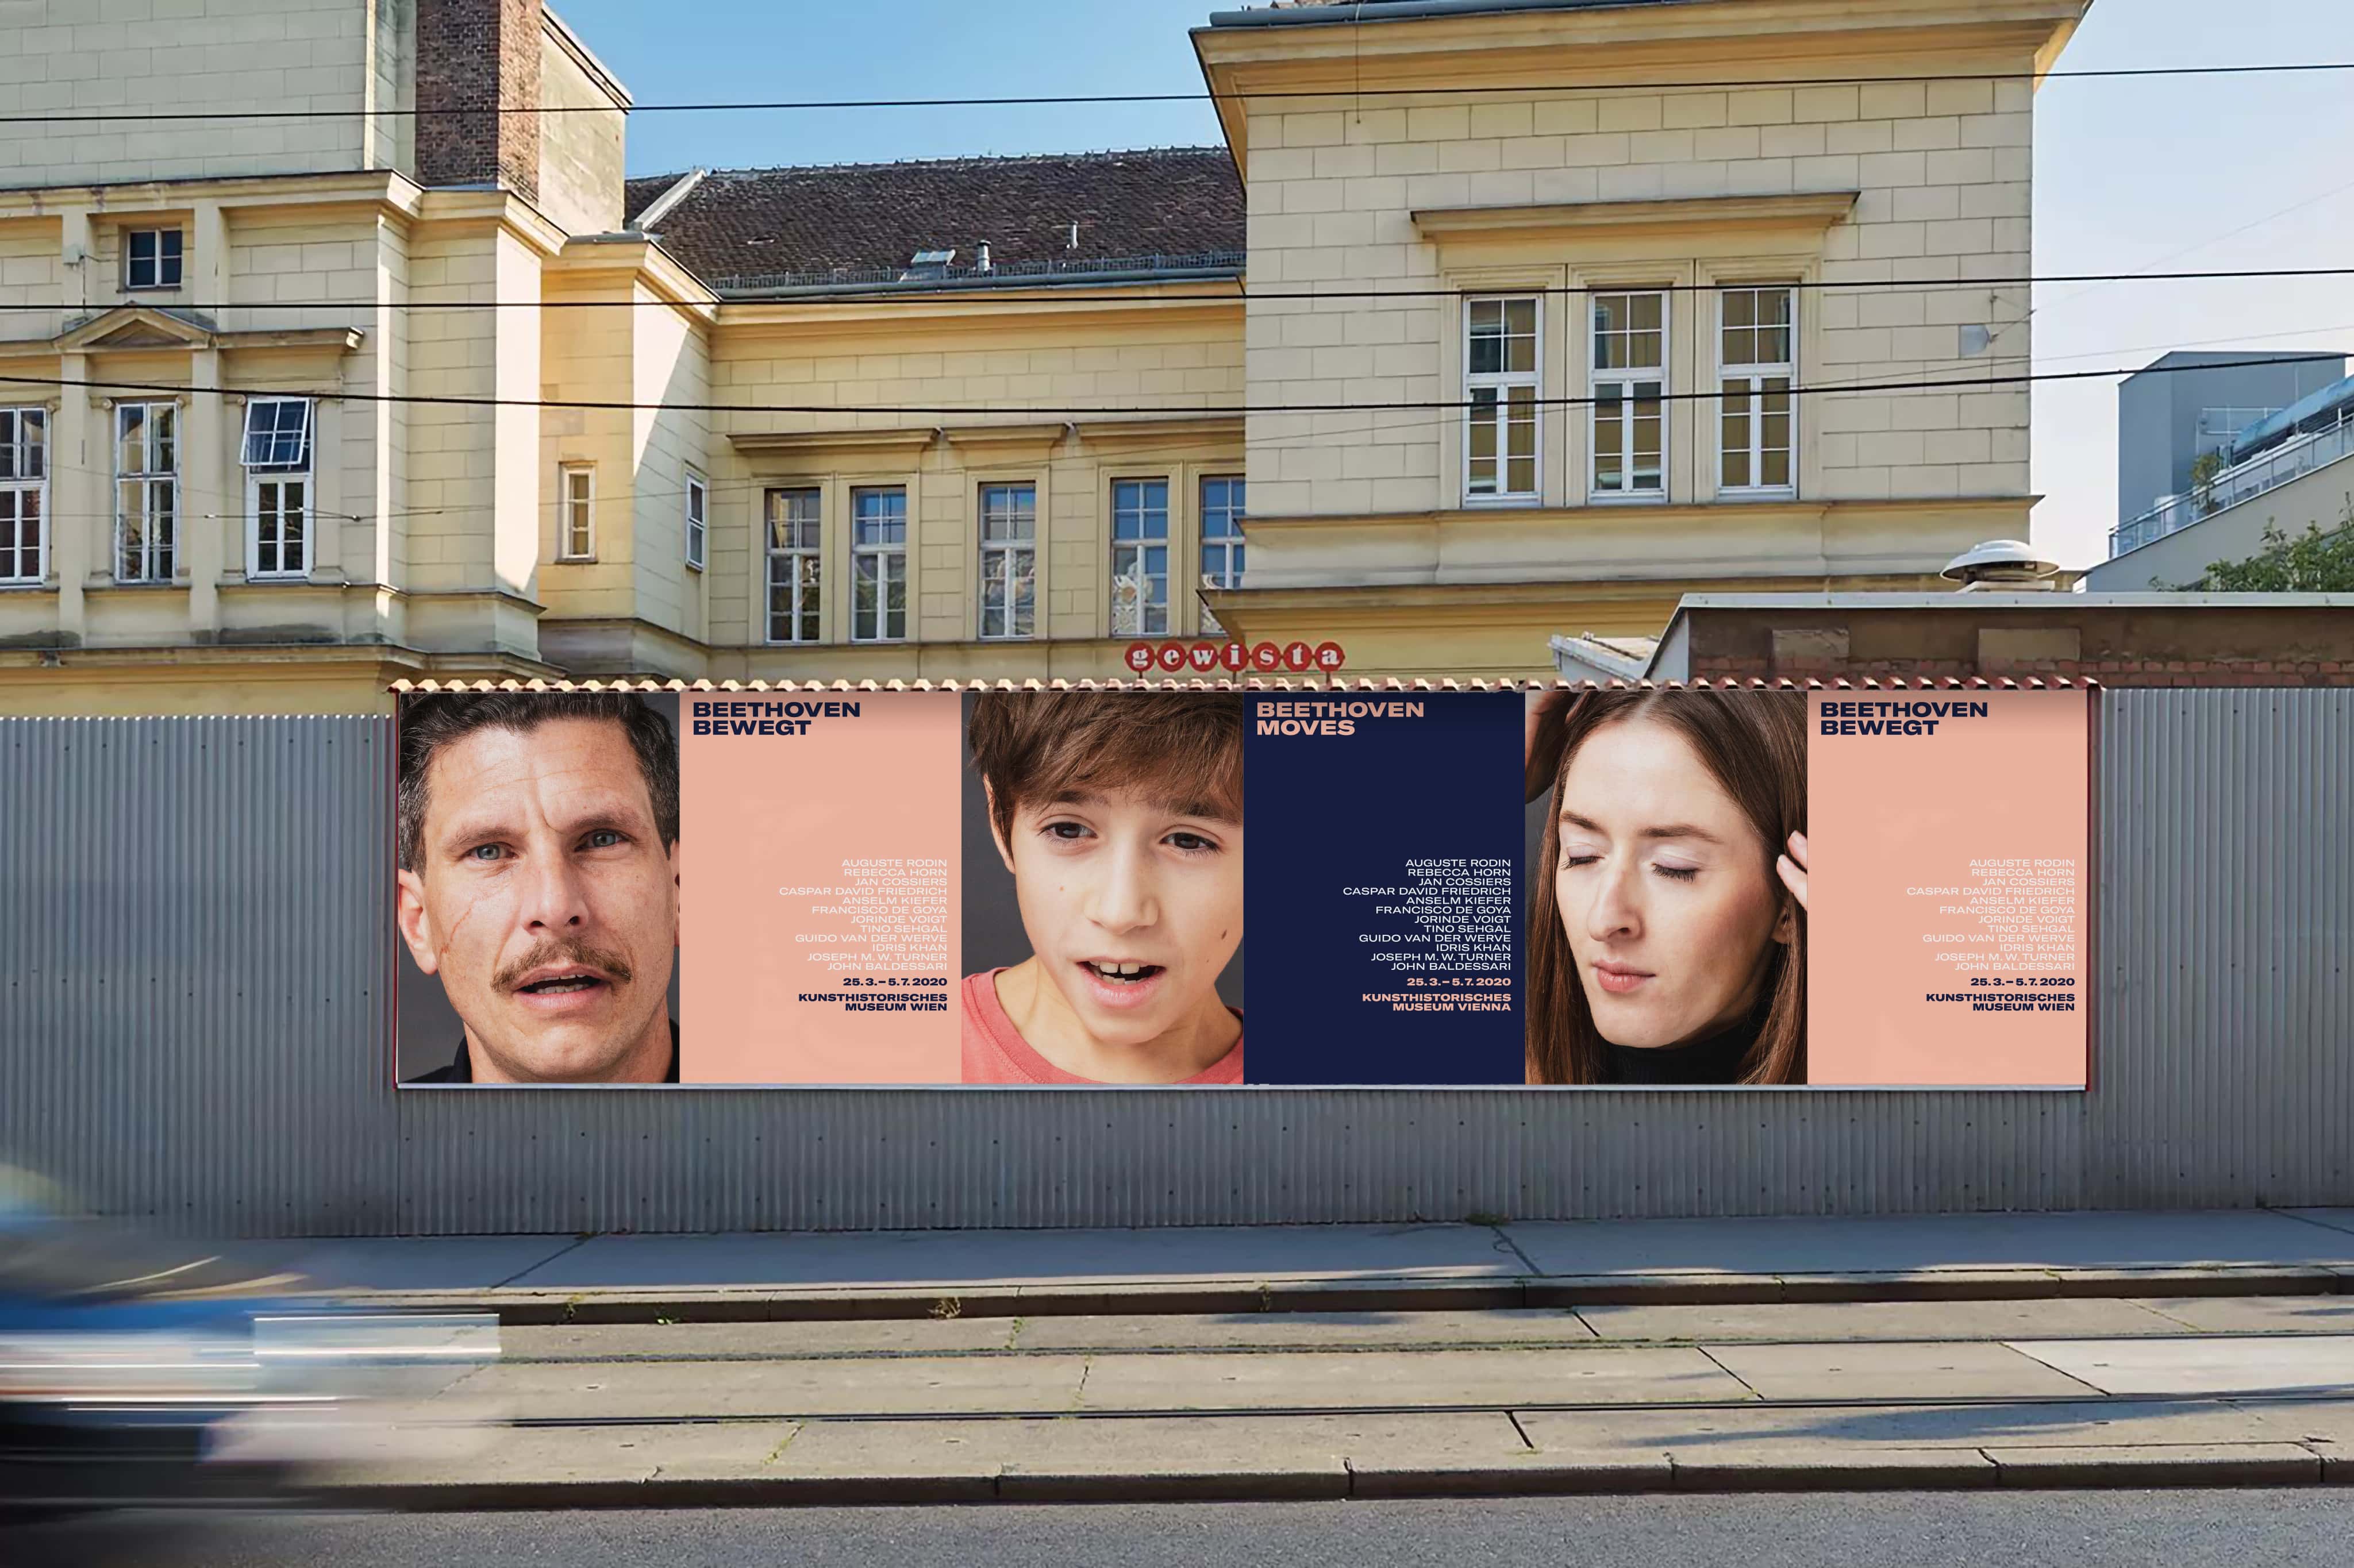 Kunsthistorisches Museum Wien Beethoven Plakatkampagne